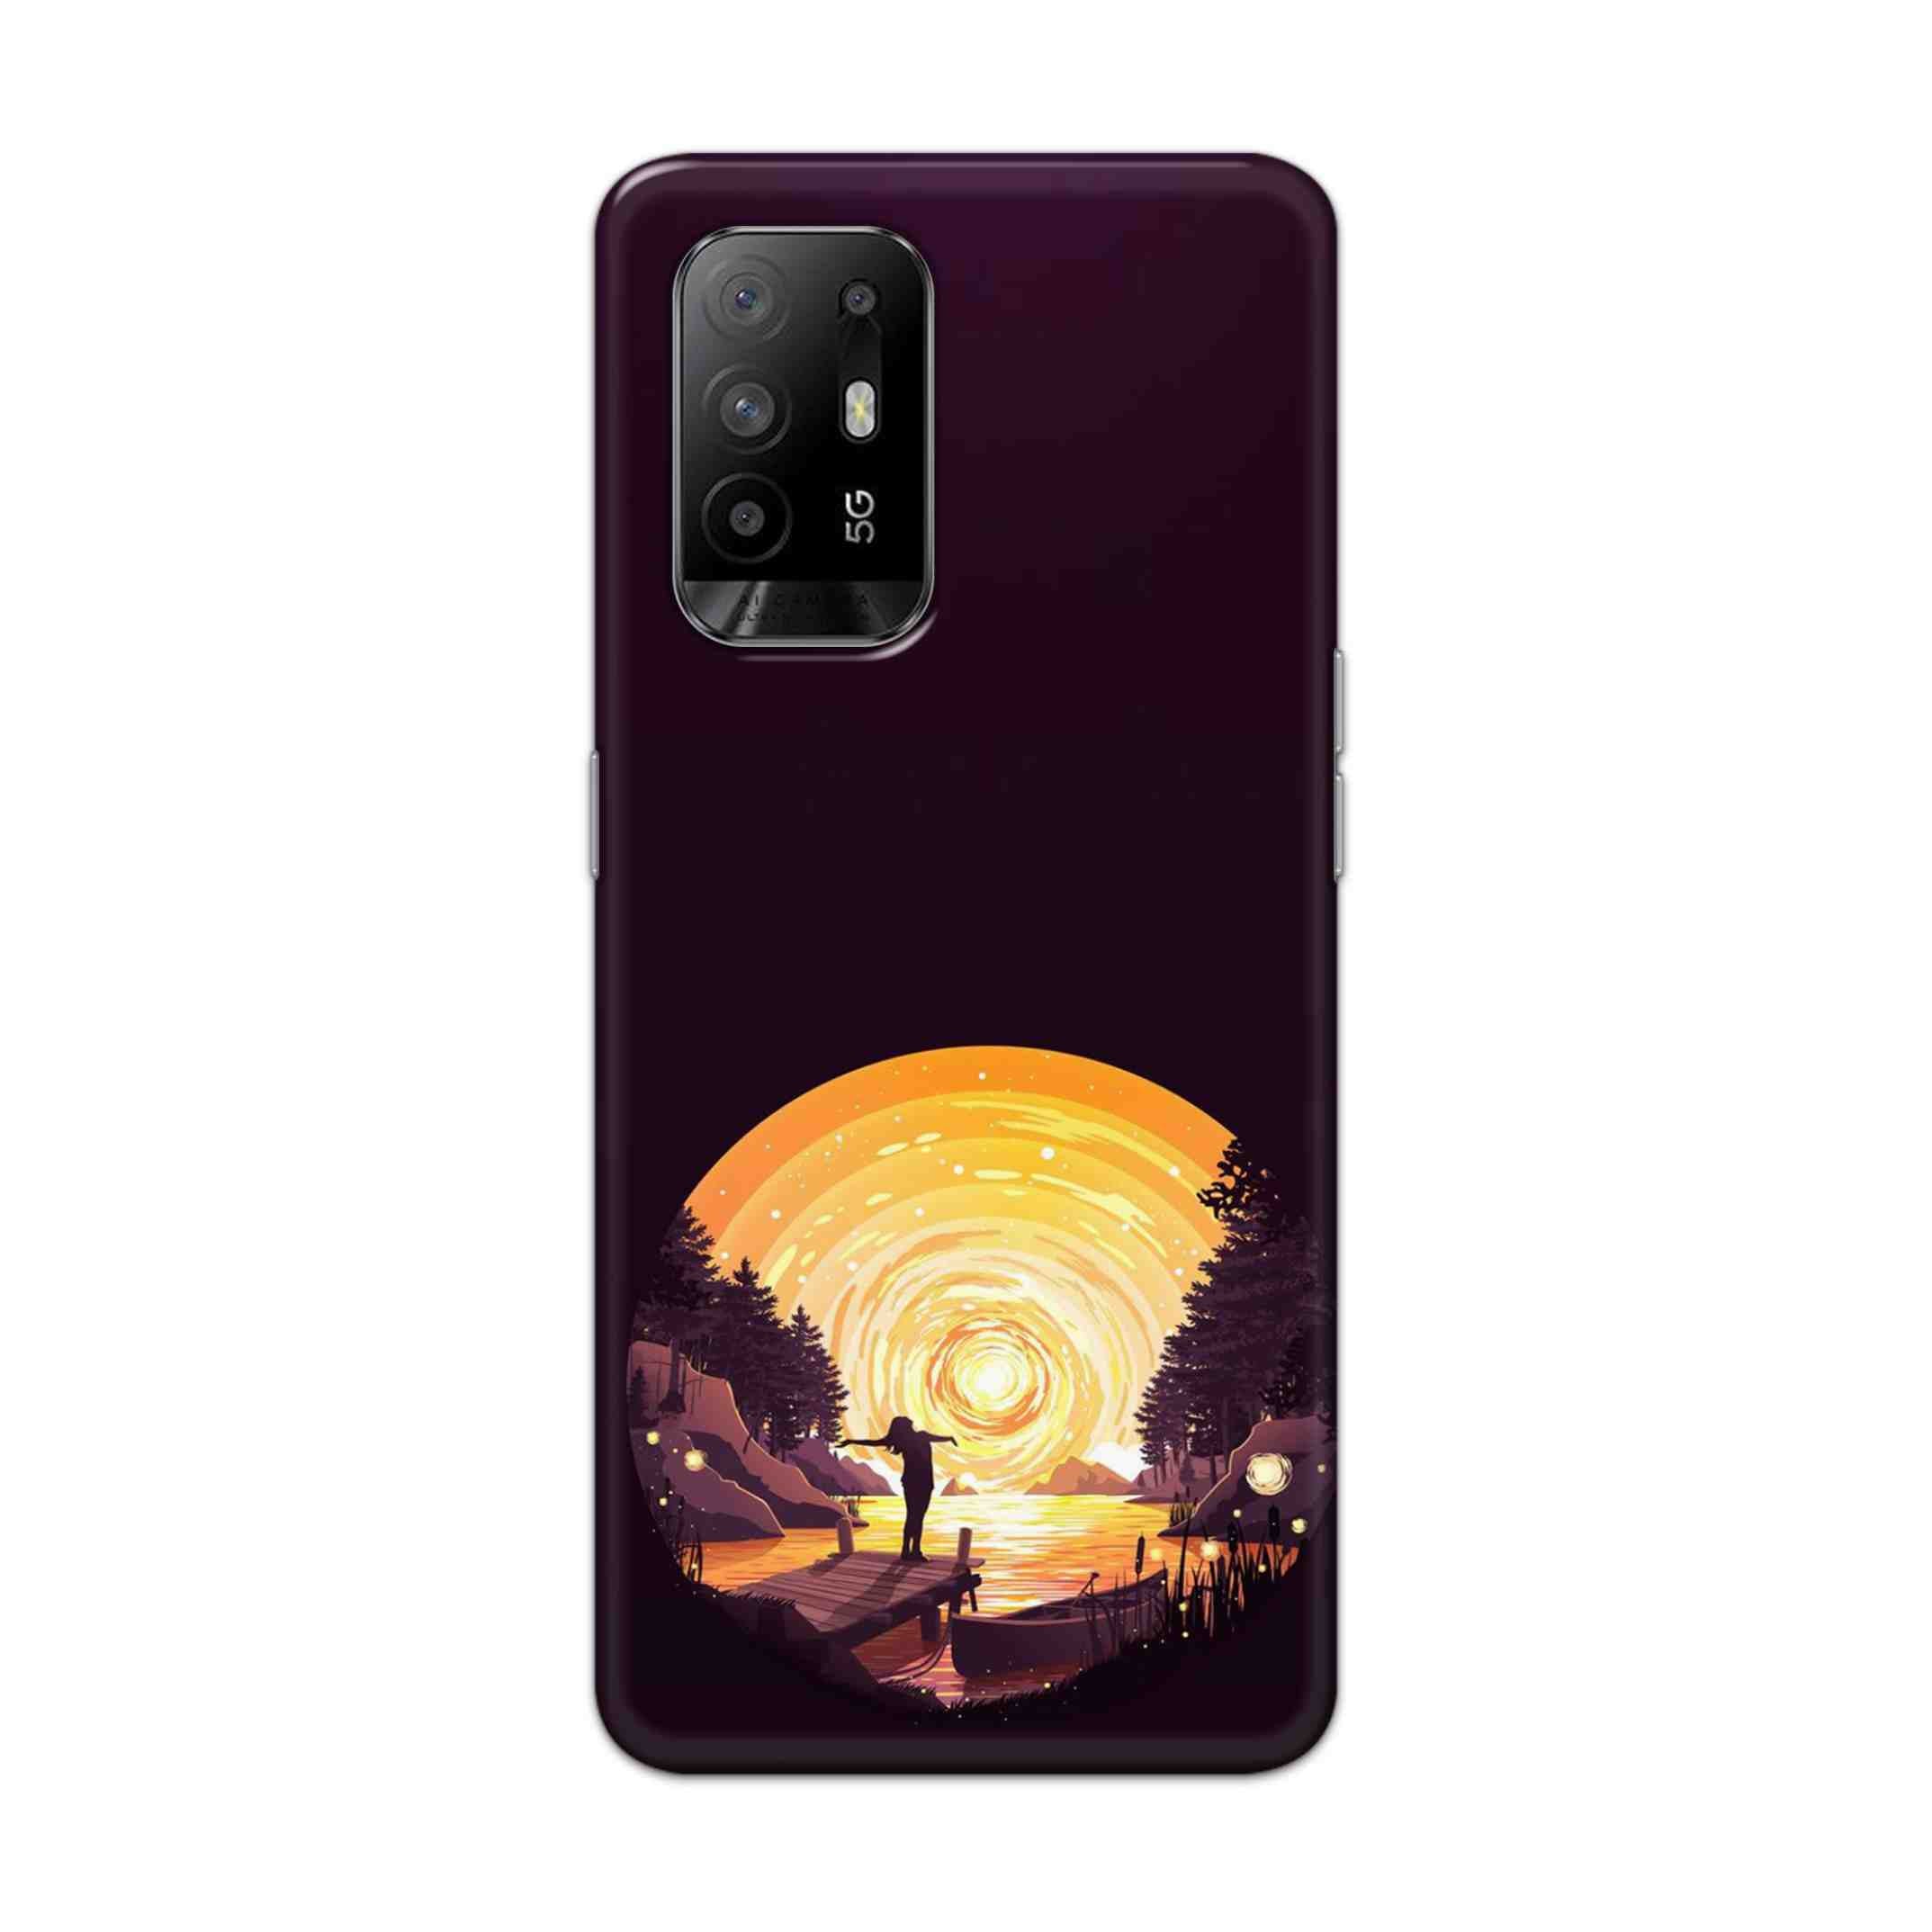 Buy Night Sunrise Hard Back Mobile Phone Case Cover For Oppo F19 Pro Plus Online